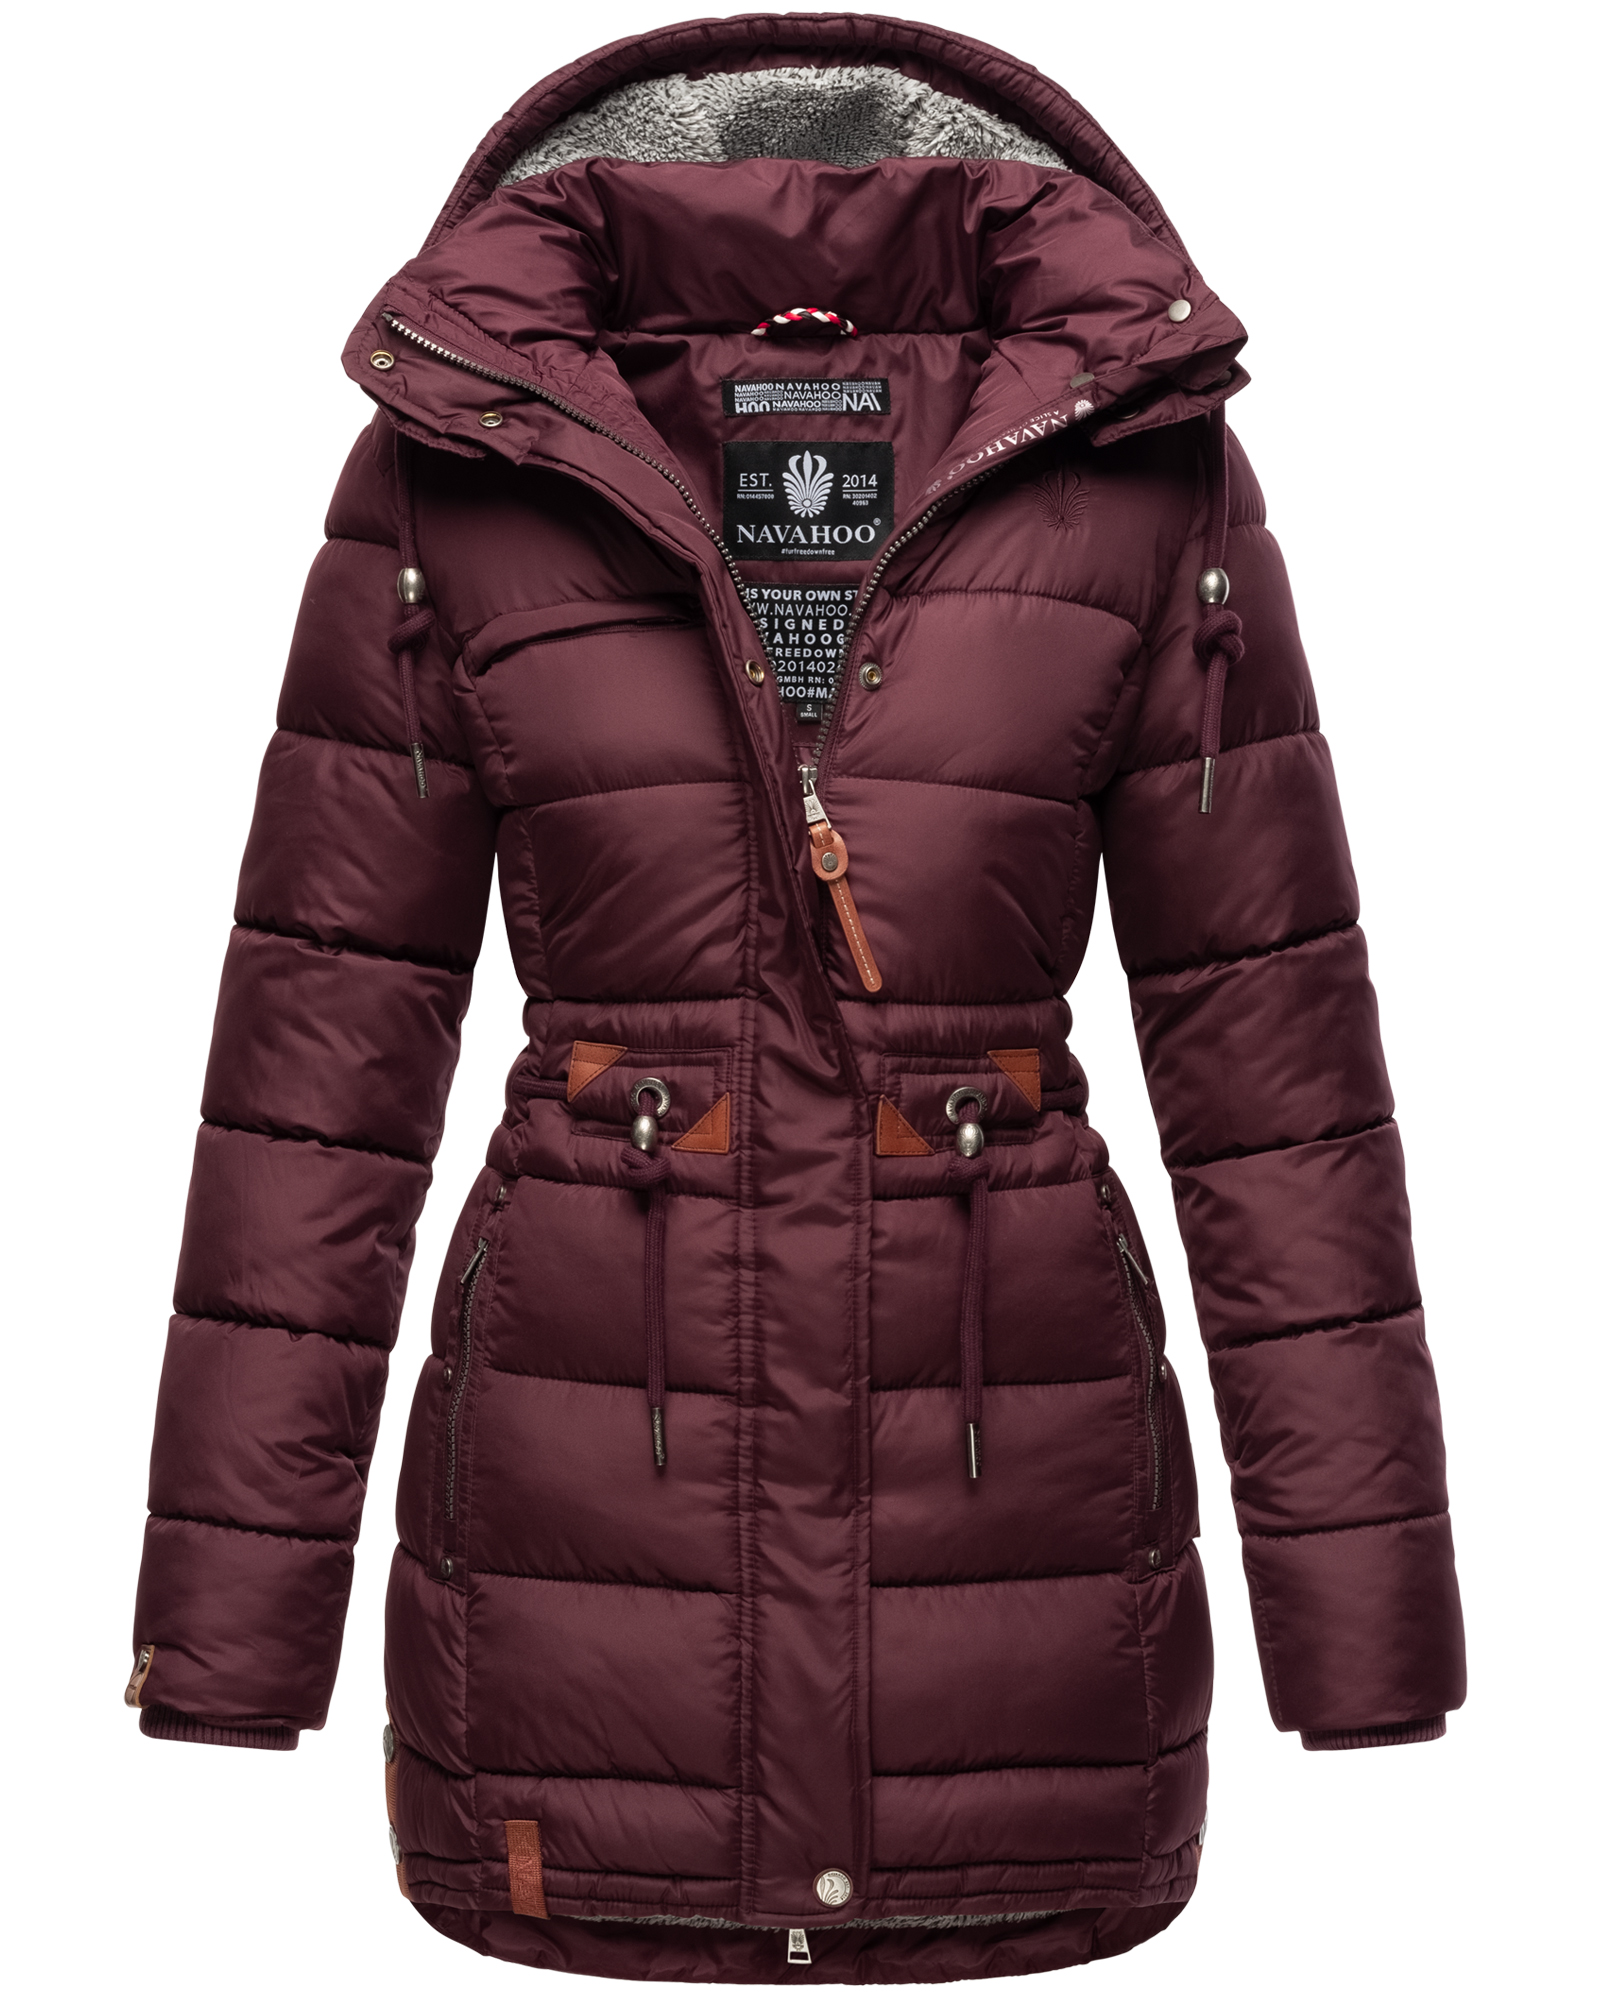 Dámský zimní kabát prošívaný kabát Daliee Navahoo - WINE Velikost: L